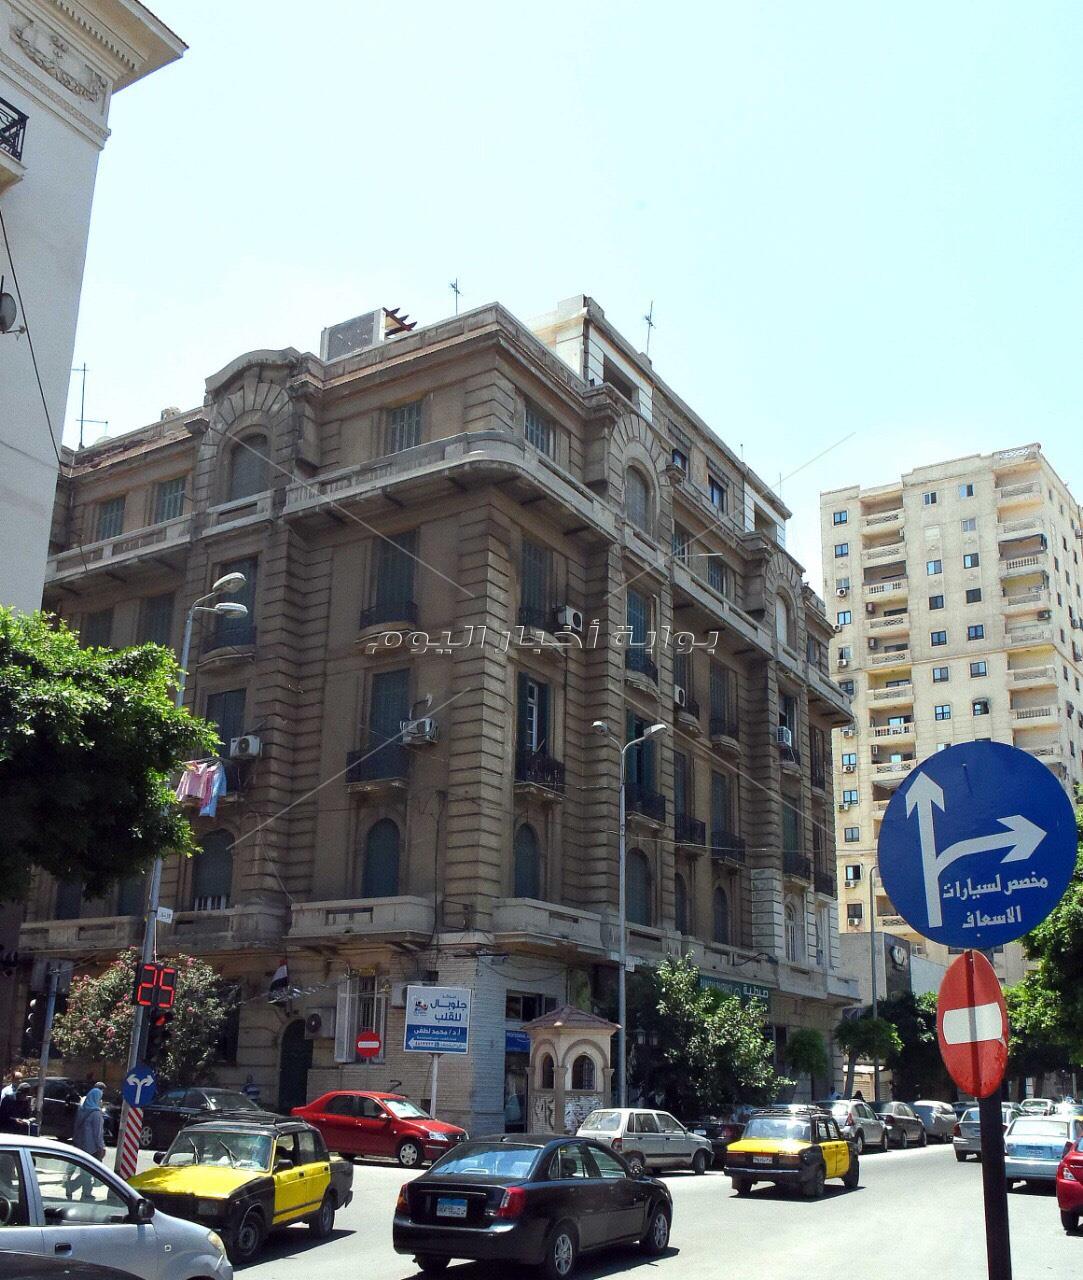 على غرار القاهرة الخديوية"وسط البلد" كنز تاريخي ينتظر التطوير في الإسكندرية